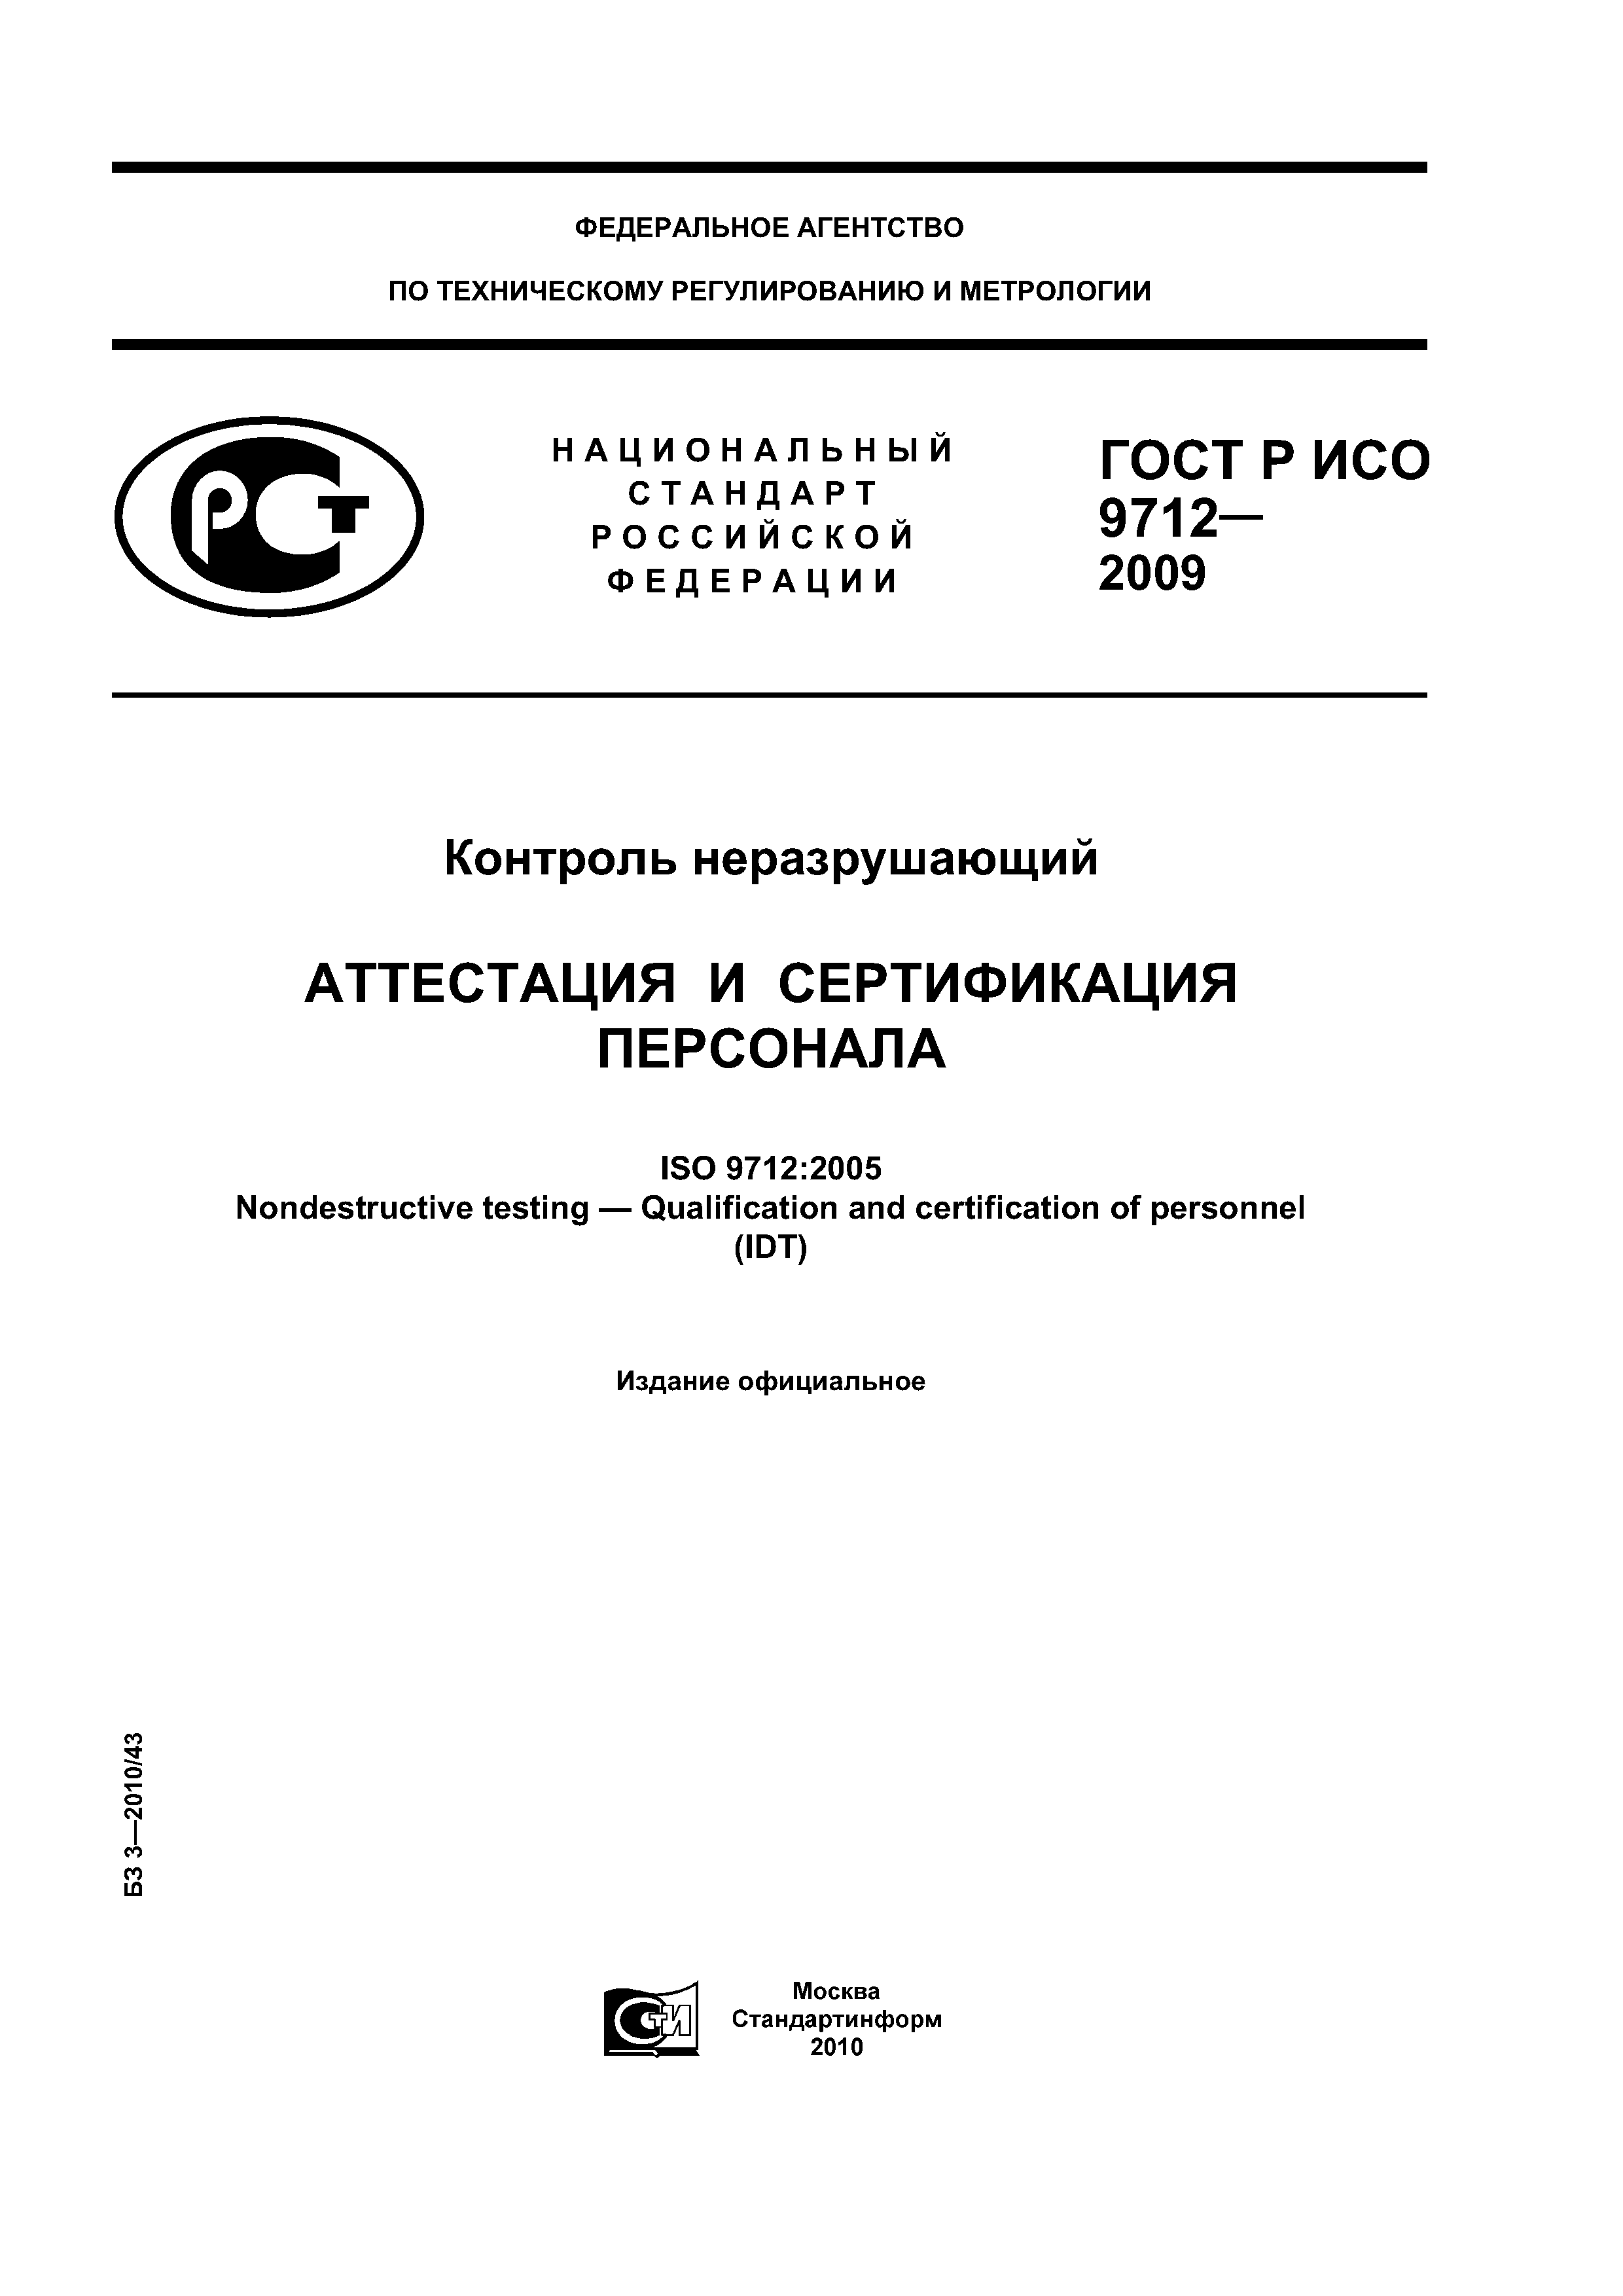 ГОСТ Р ИСО 9712-2009